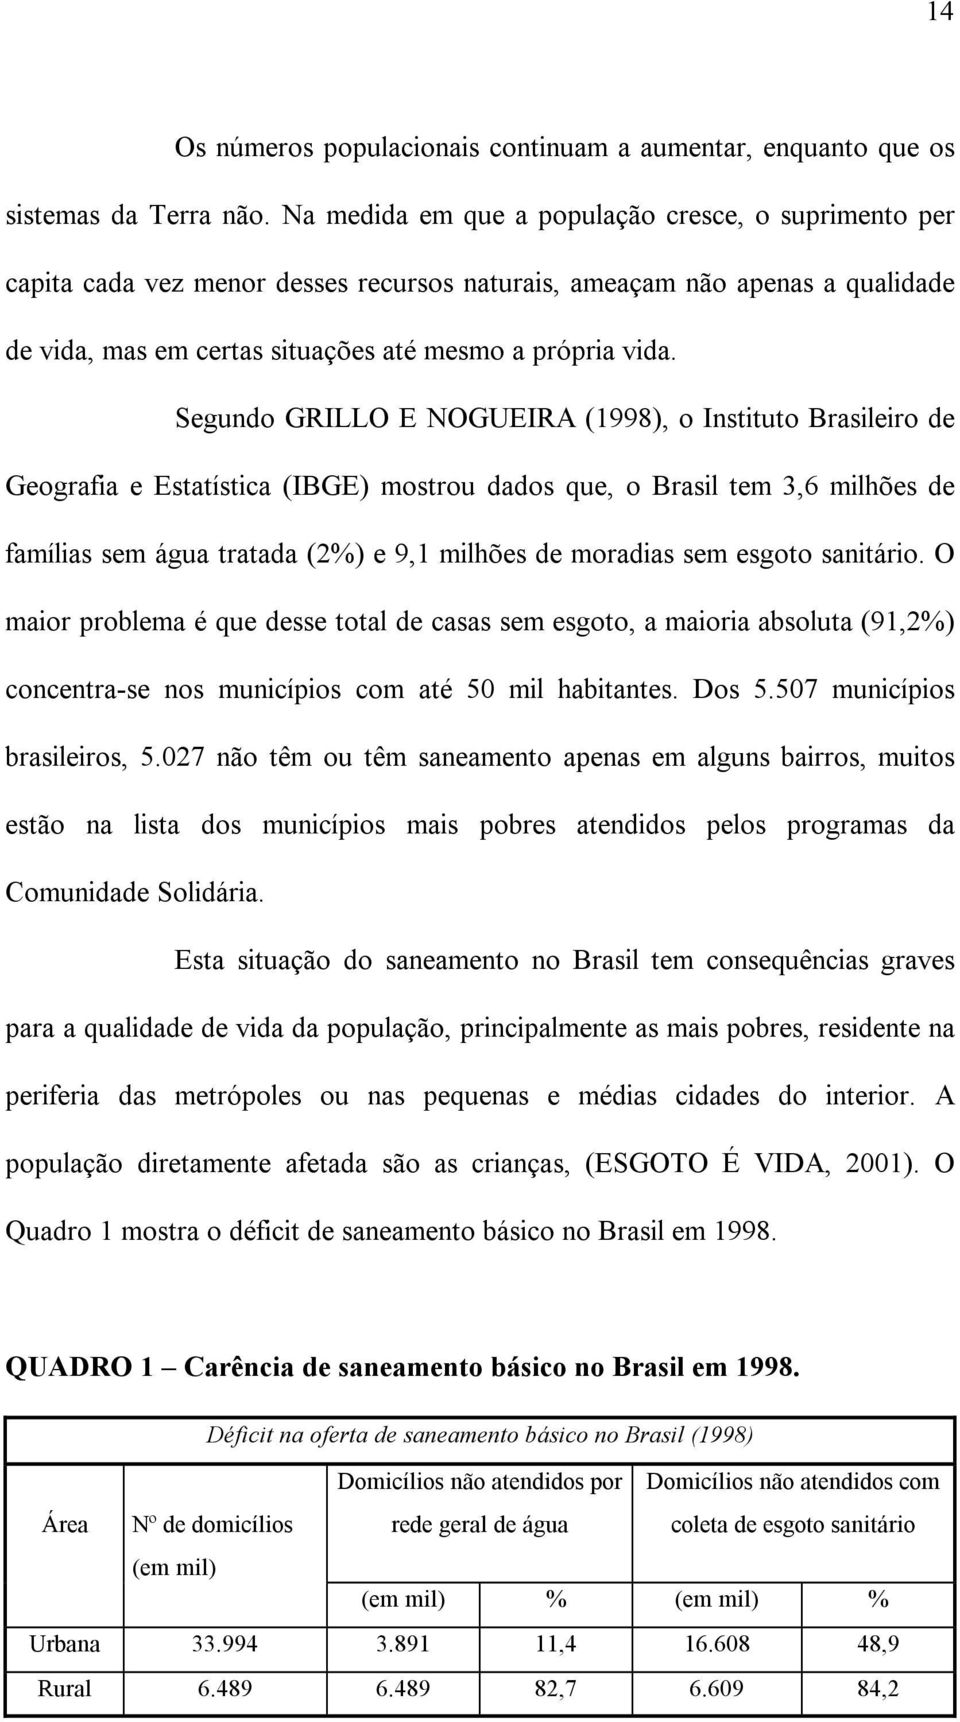 Segundo GRILLO E NOGUEIRA (1998), o Instituto Brasileiro de Geografia e Estatística (IBGE) mostrou dados que, o Brasil tem 3,6 milhões de famílias sem água tratada (2%) e 9,1 milhões de moradias sem